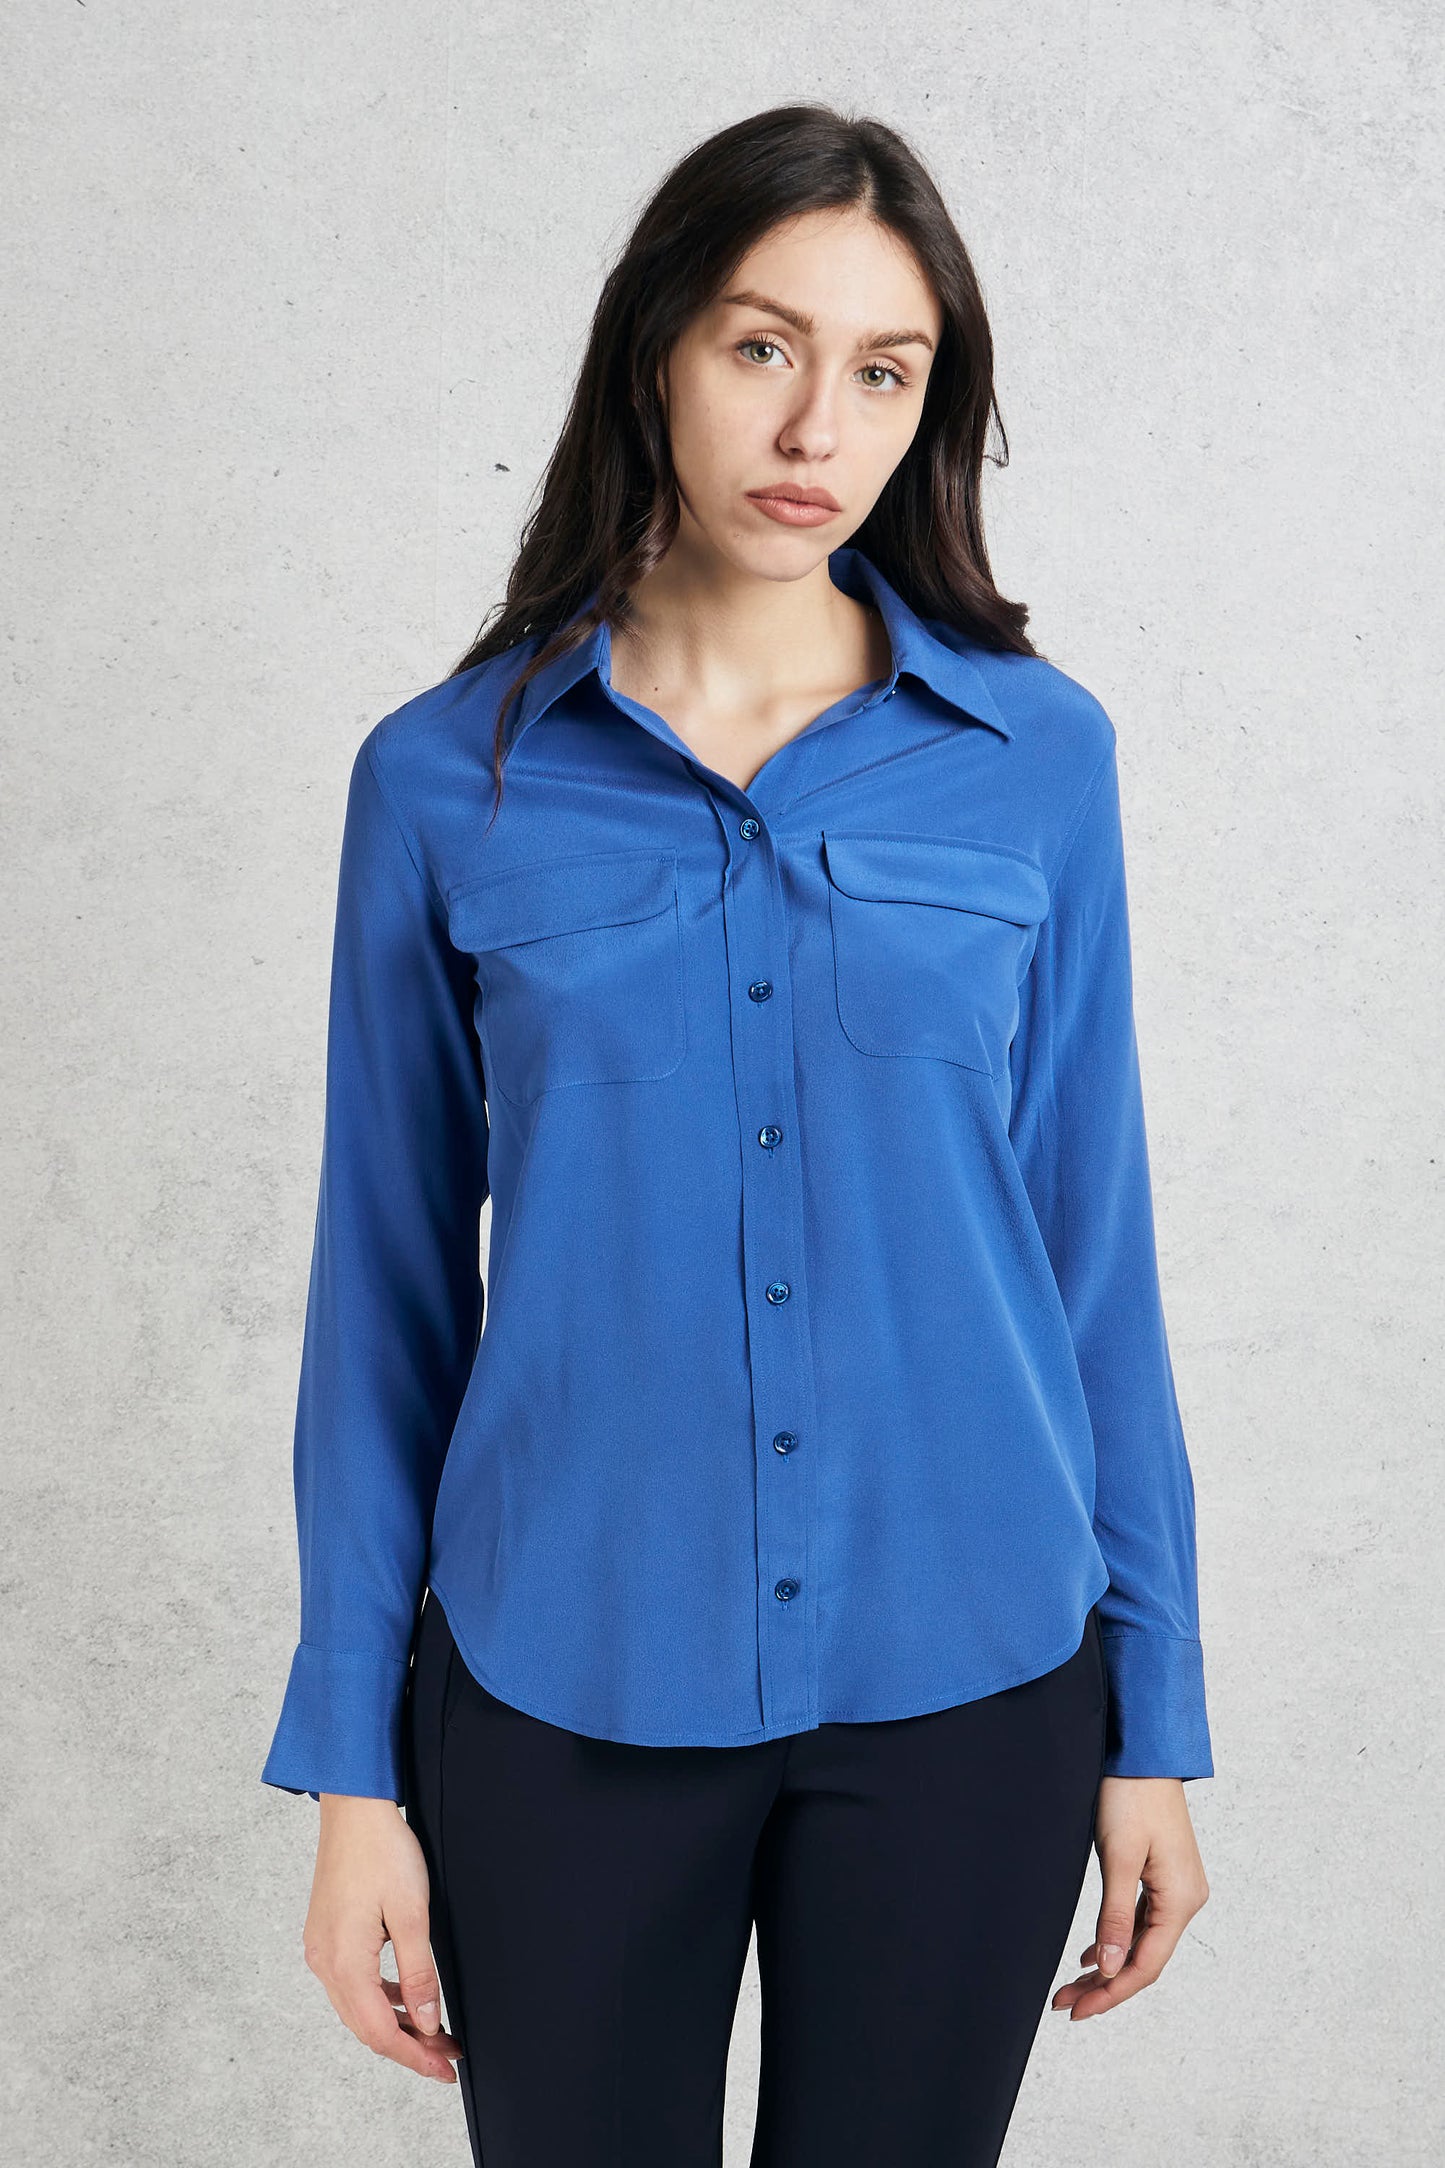  Equipment Femme Blue Silk Shirt For Women Blu Donna - 2